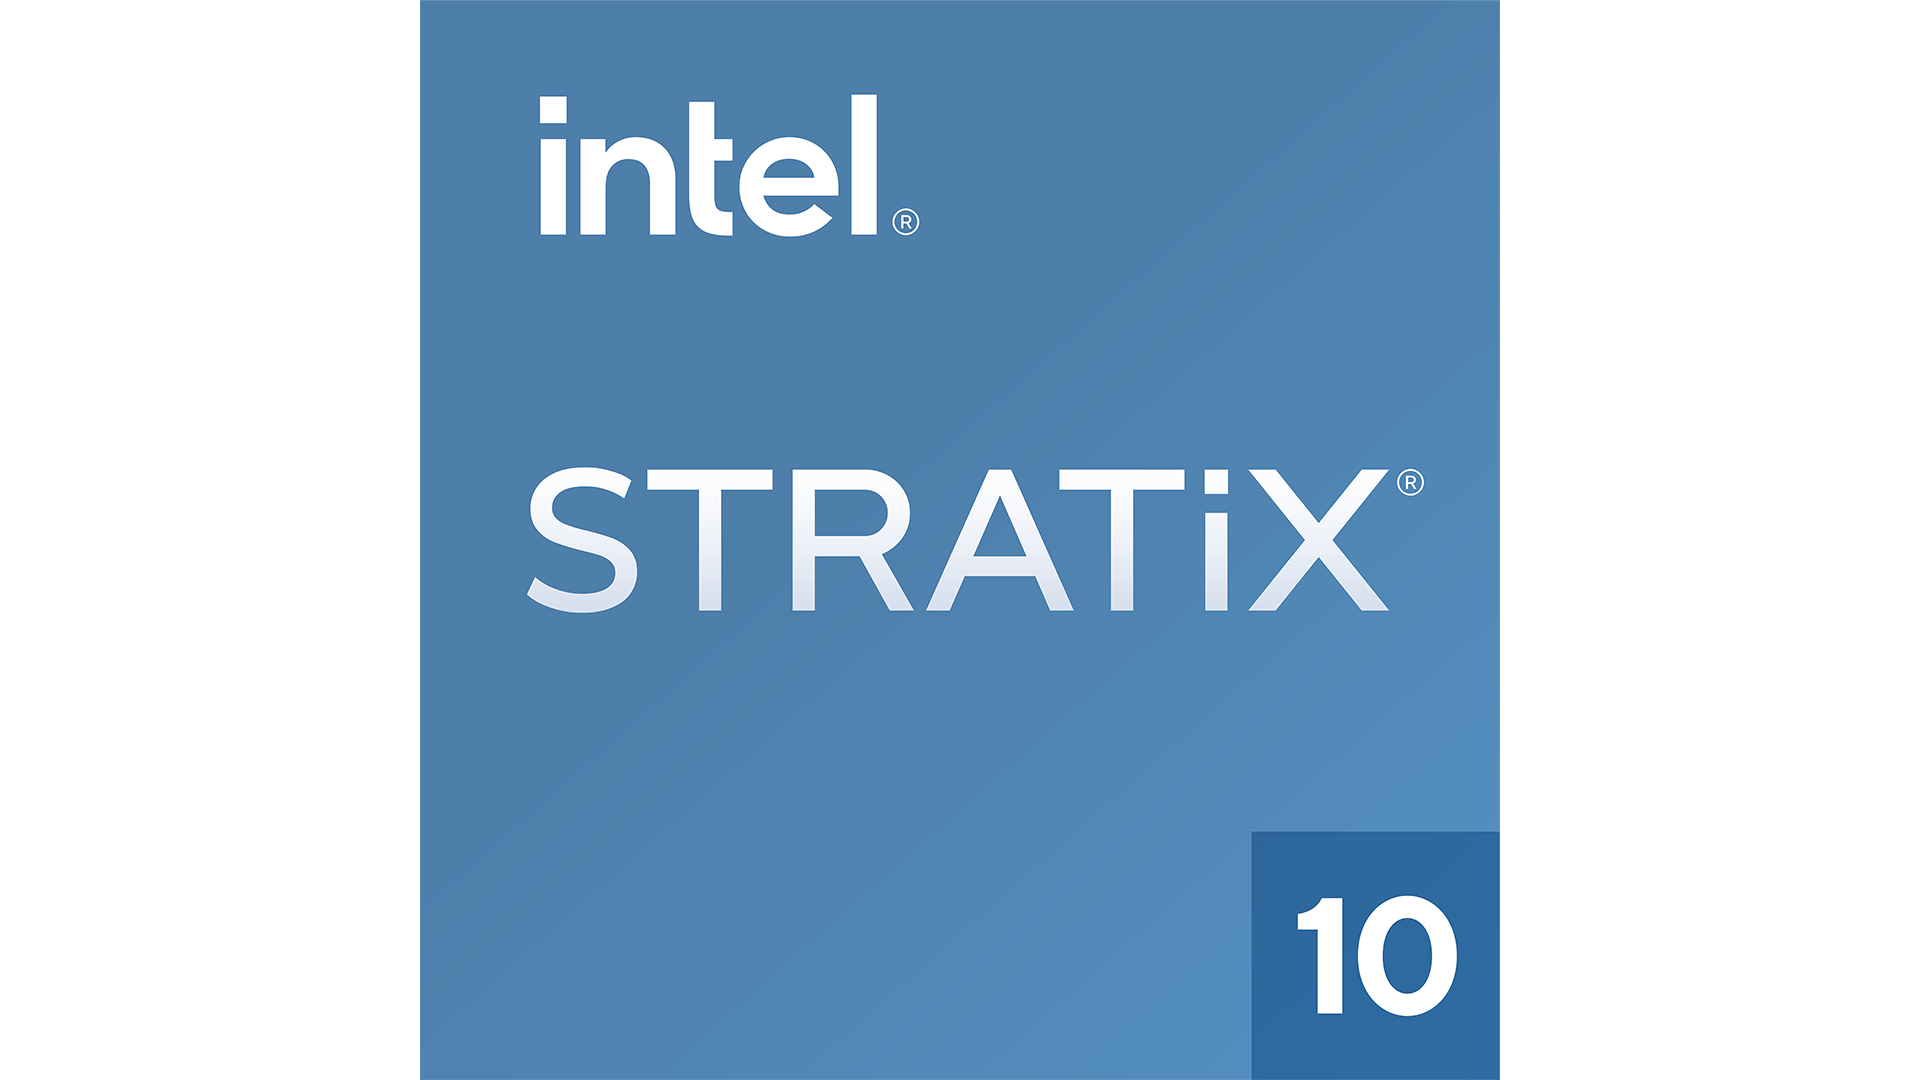 Intel® Stratix® 10 TX FPGA